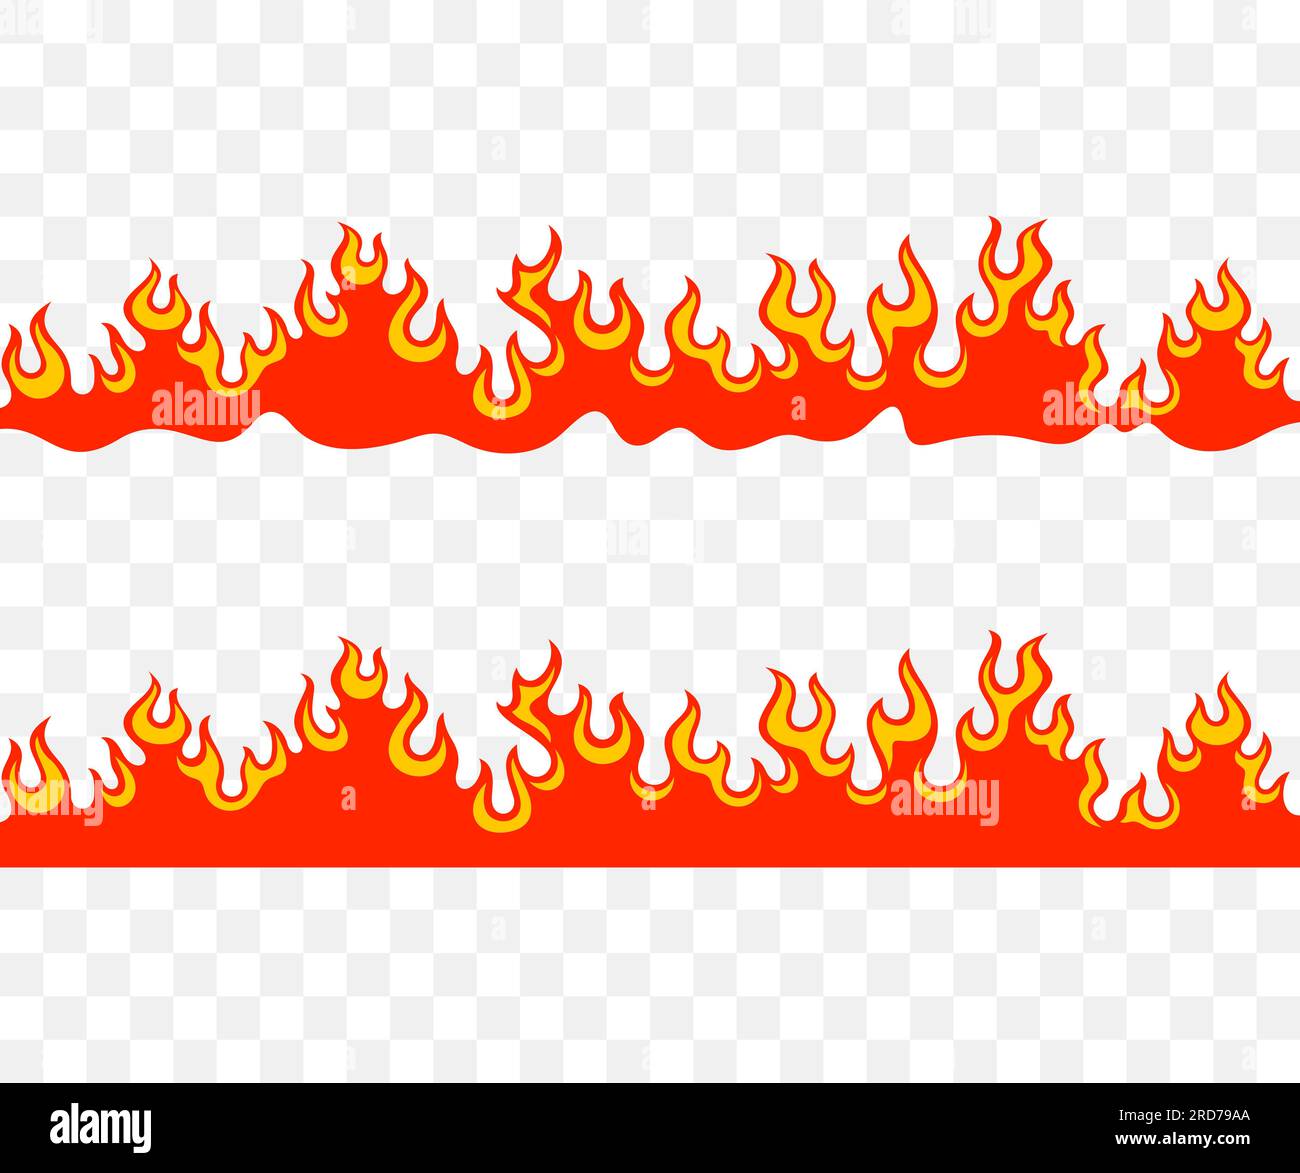 Lagerfeuer, Feuer, Flammen, Ballenfeuer, Lagerfeuer, brennen und brennen, nahtloses Grafikdesign. Feurig, flammend, glühend, Feuerball, Lauffeuer und glühend, Vektor Stock Vektor